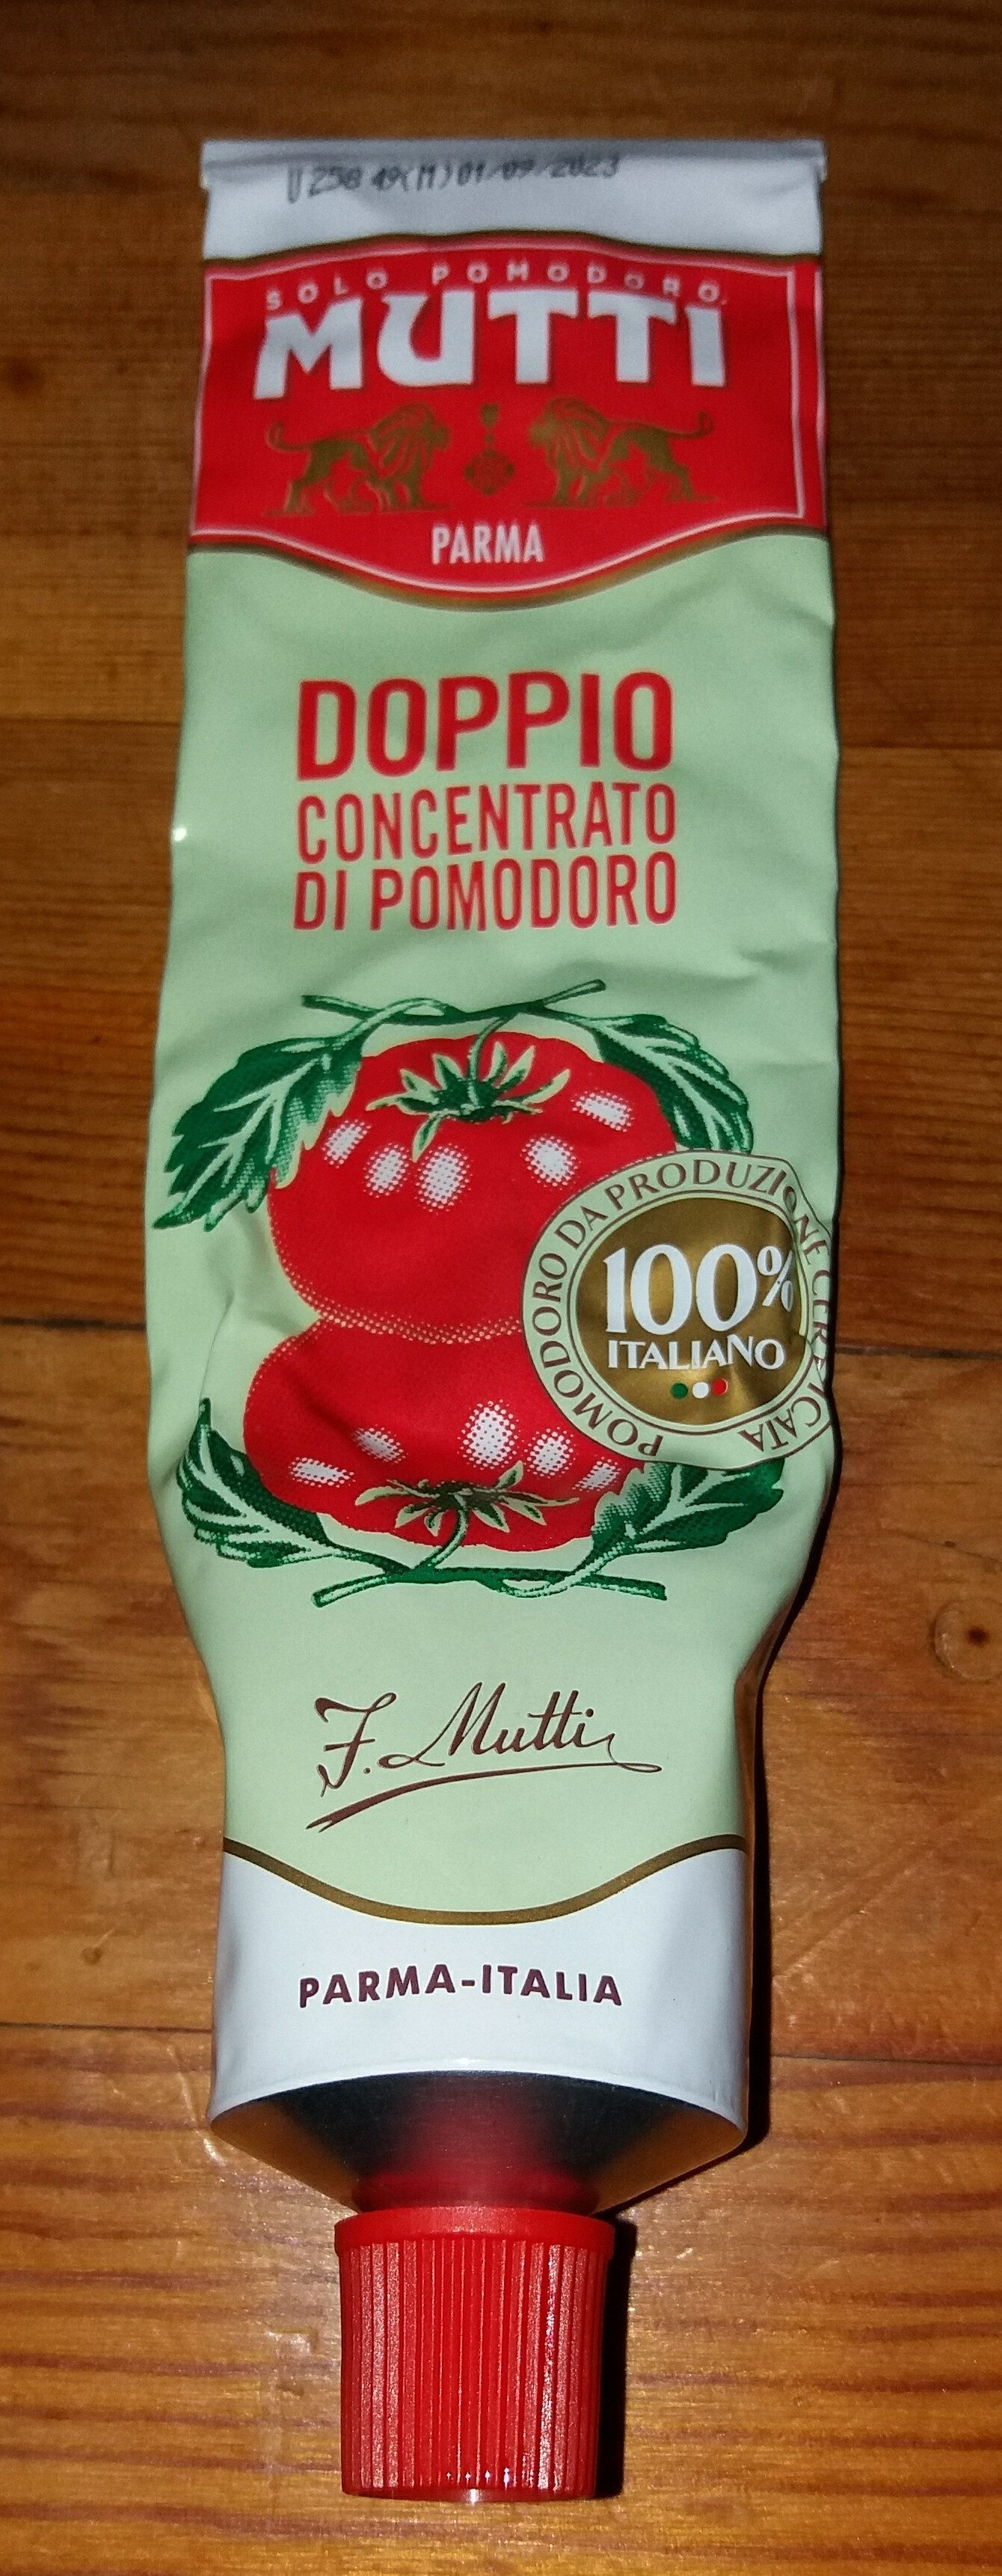 Doppio concentrato di pomodoro - Product - it